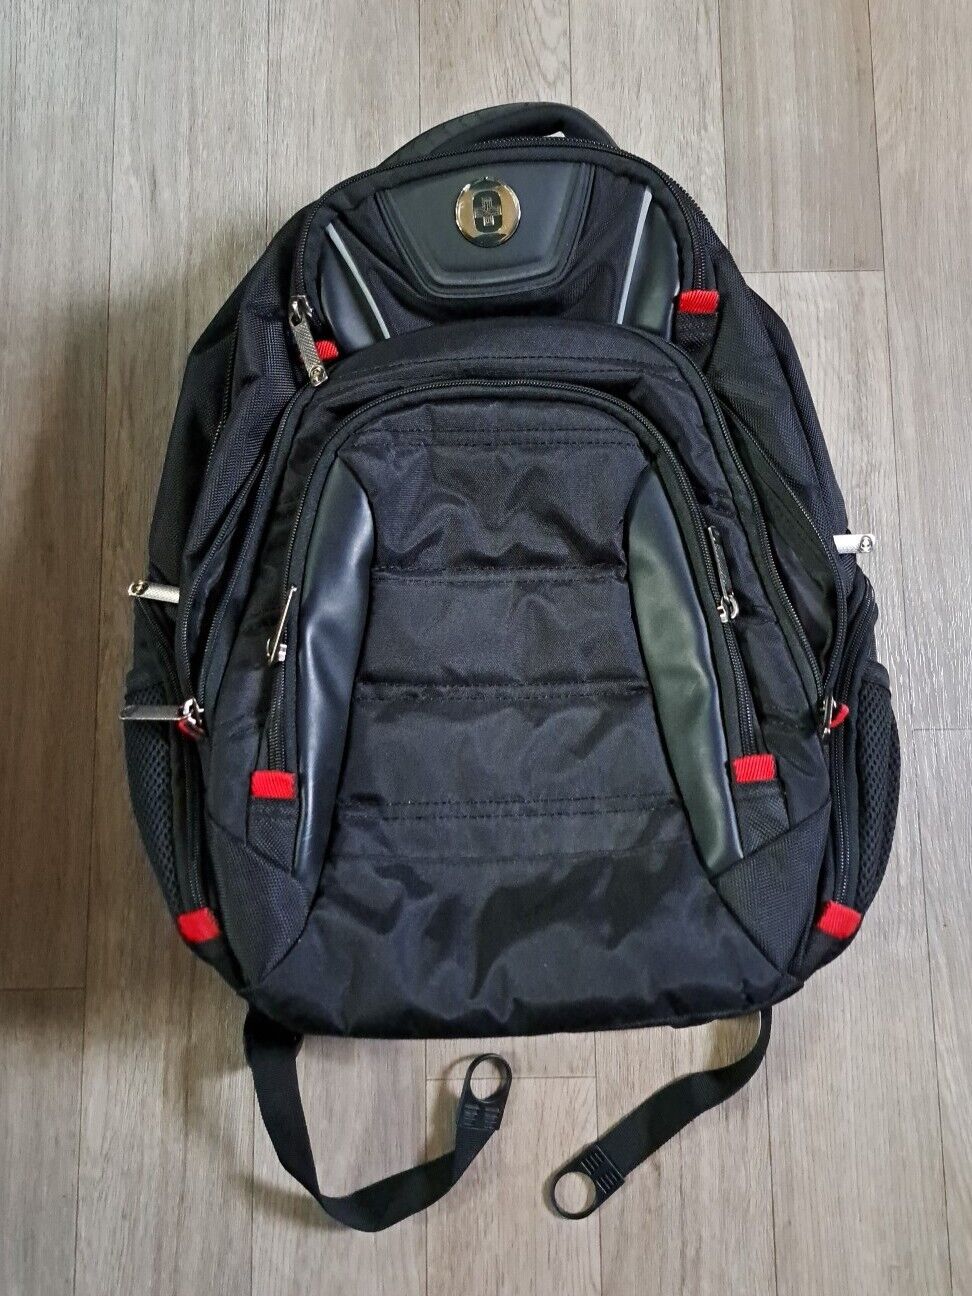 Swiss Digital TSA Friendly Large Black Laptop Backpack..Heavy Duty...